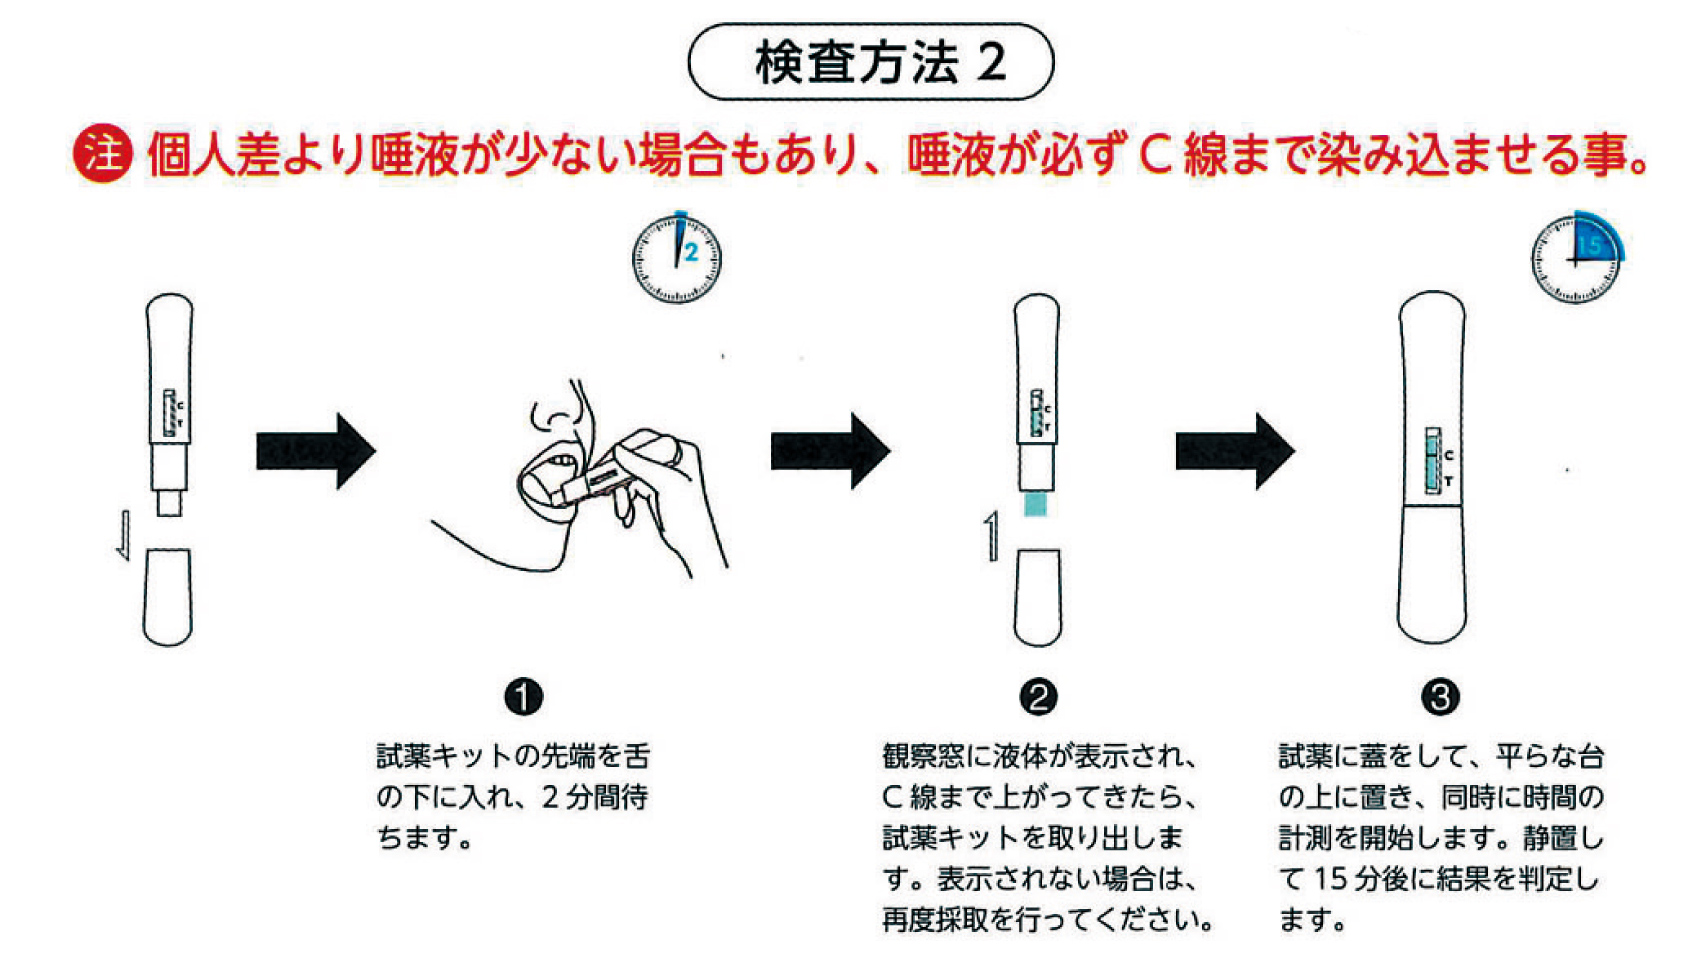 検出方法は2通り　直接口腔から測定する方法